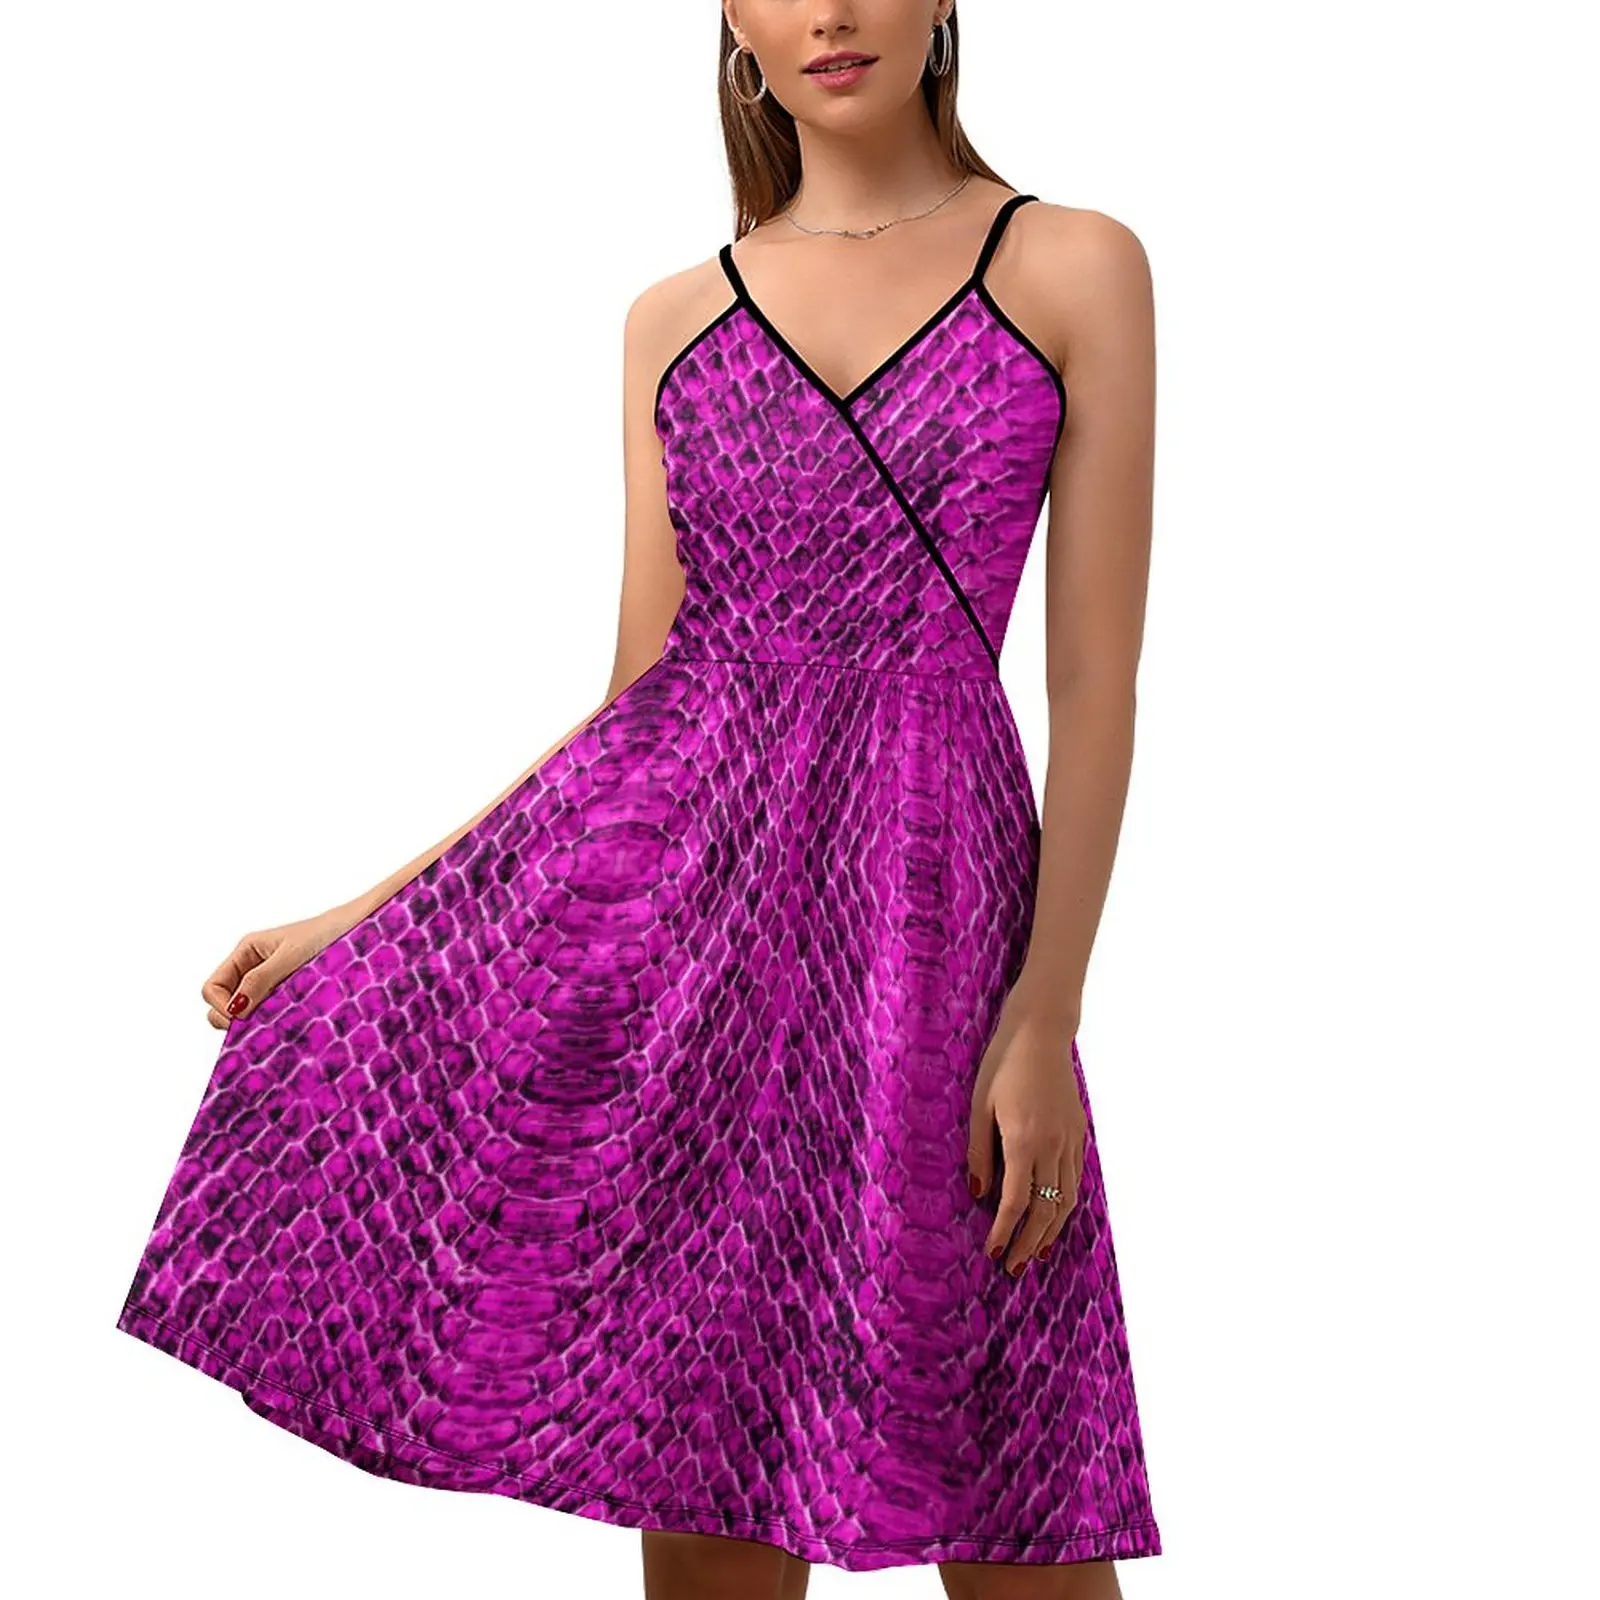 

Женское платье с принтом змеиной кожи, розовое и фиолетовое уличное модное платье с принтом, летнее пляжное Повседневное платье в стиле бохо на бретелях, подарок на день рождения